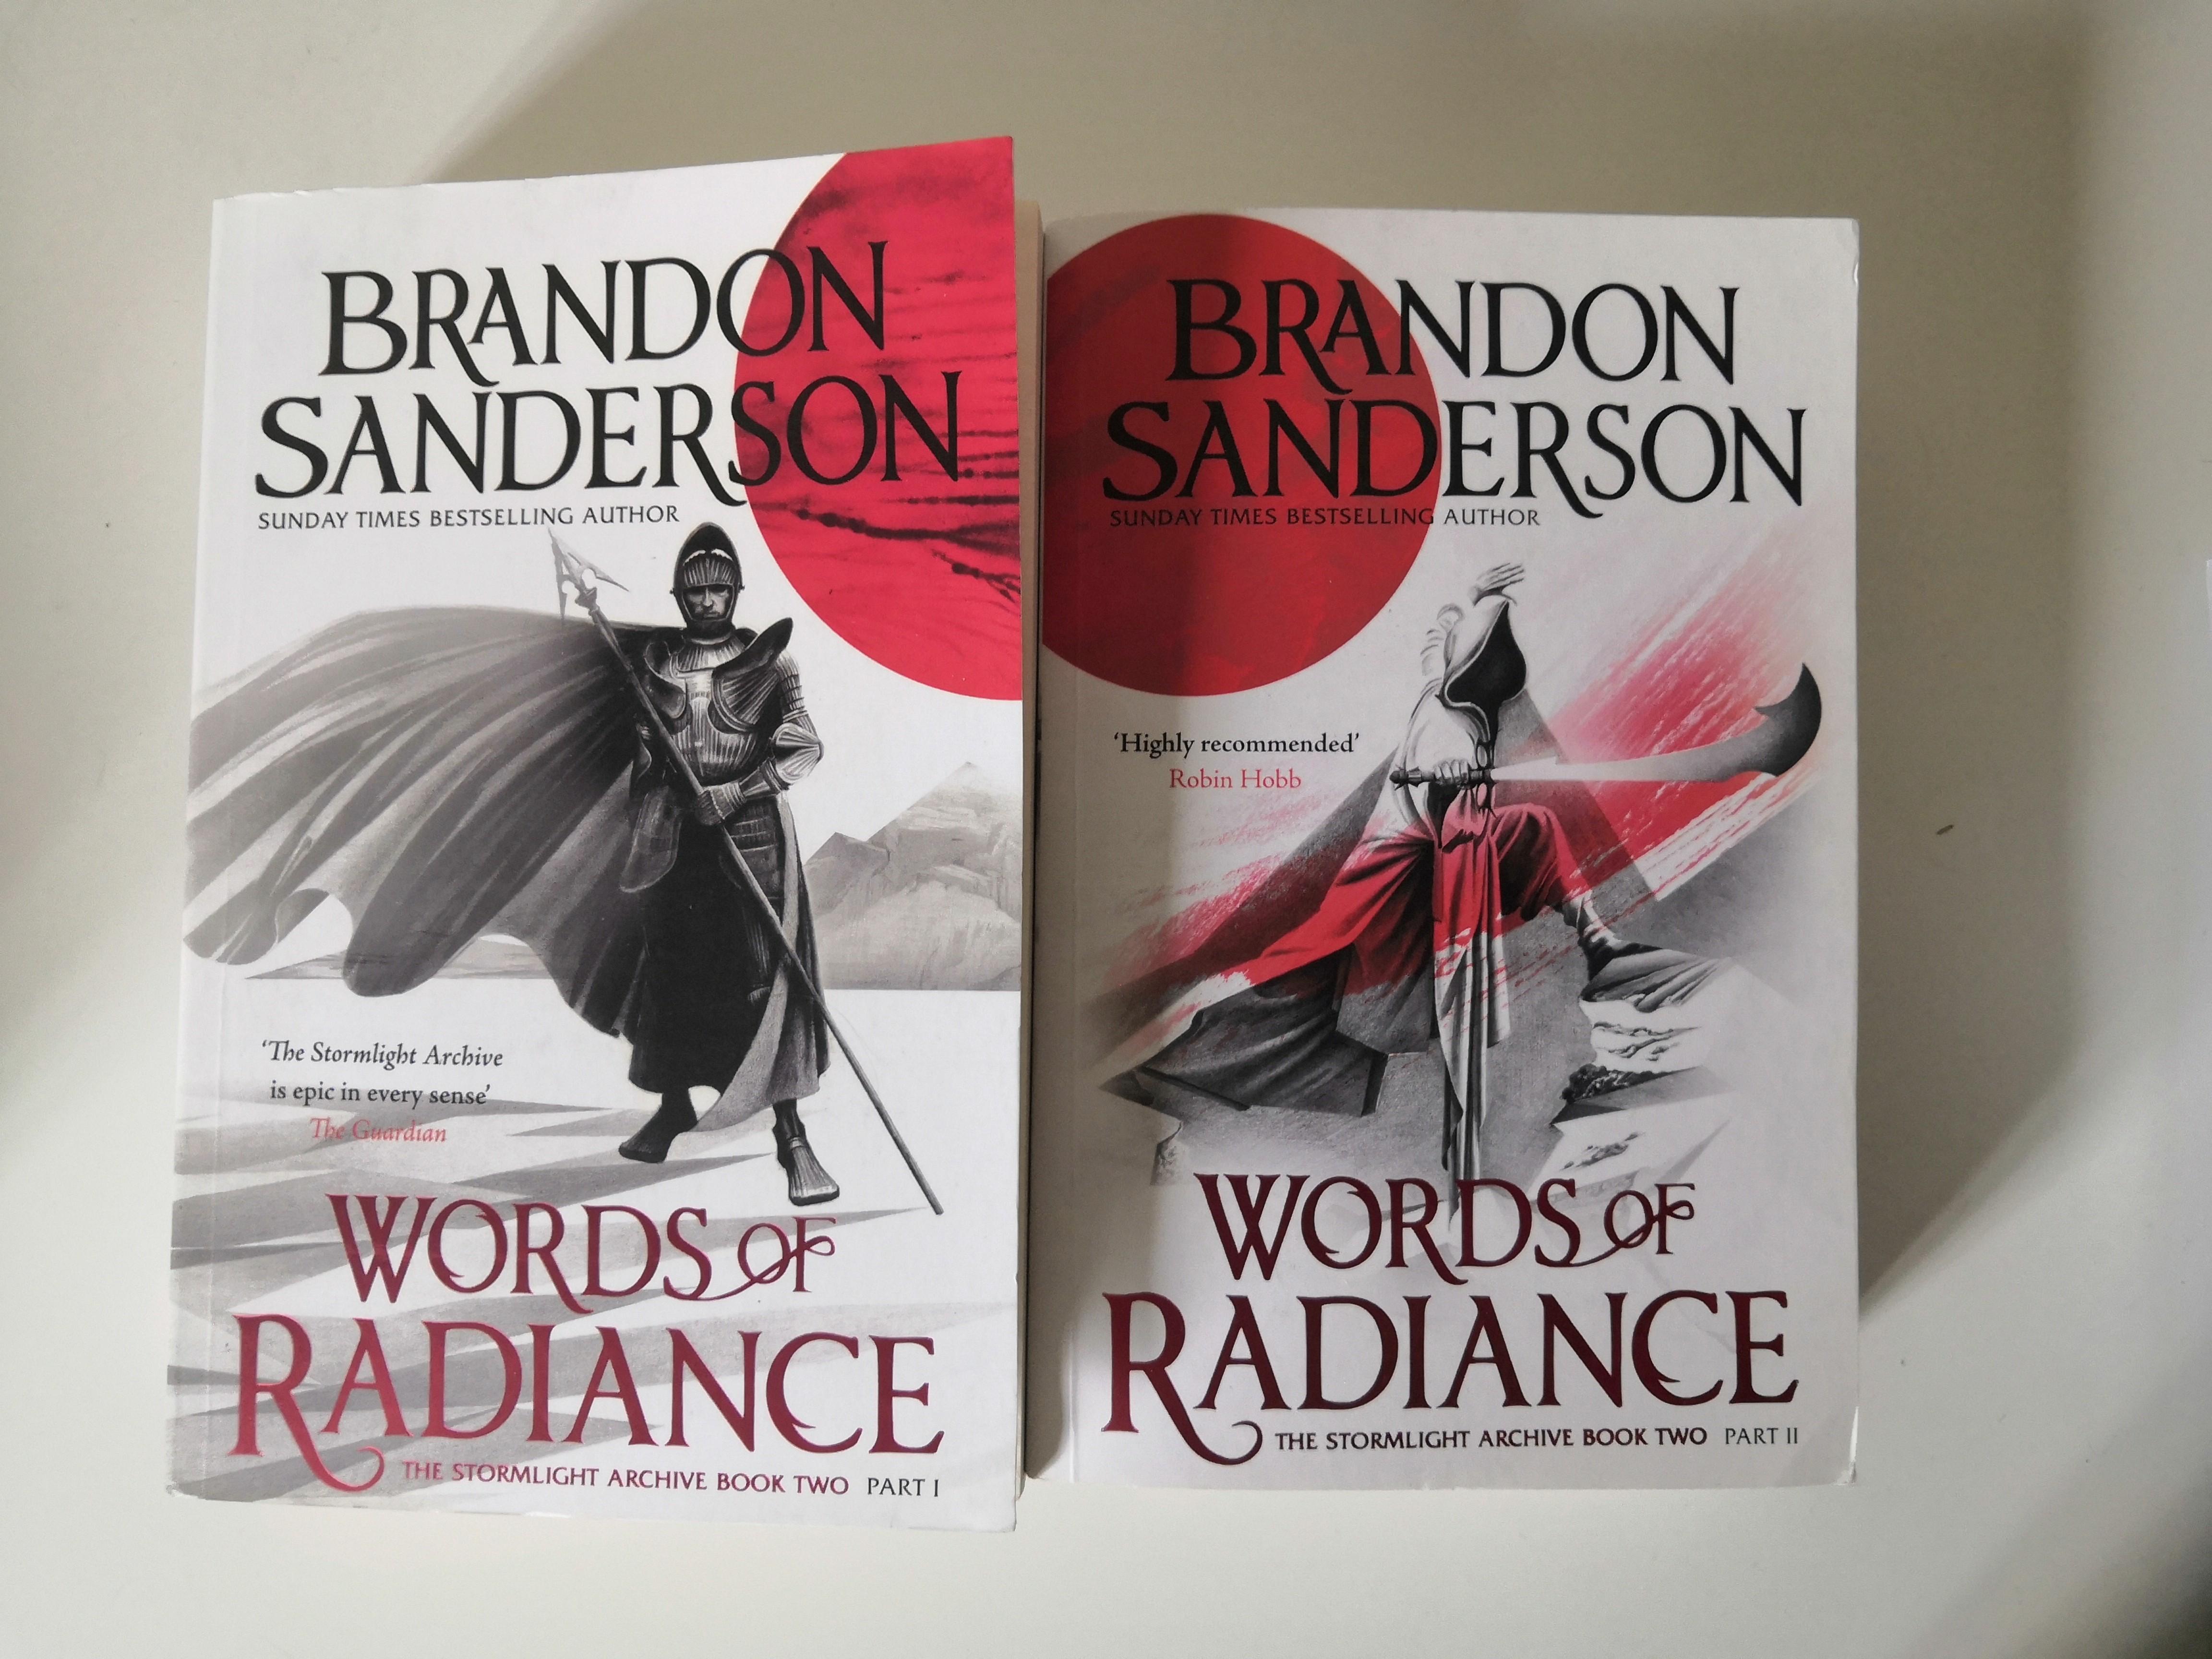 Brandon Sanderson: Kickstarter for 4 secret novels raises $19